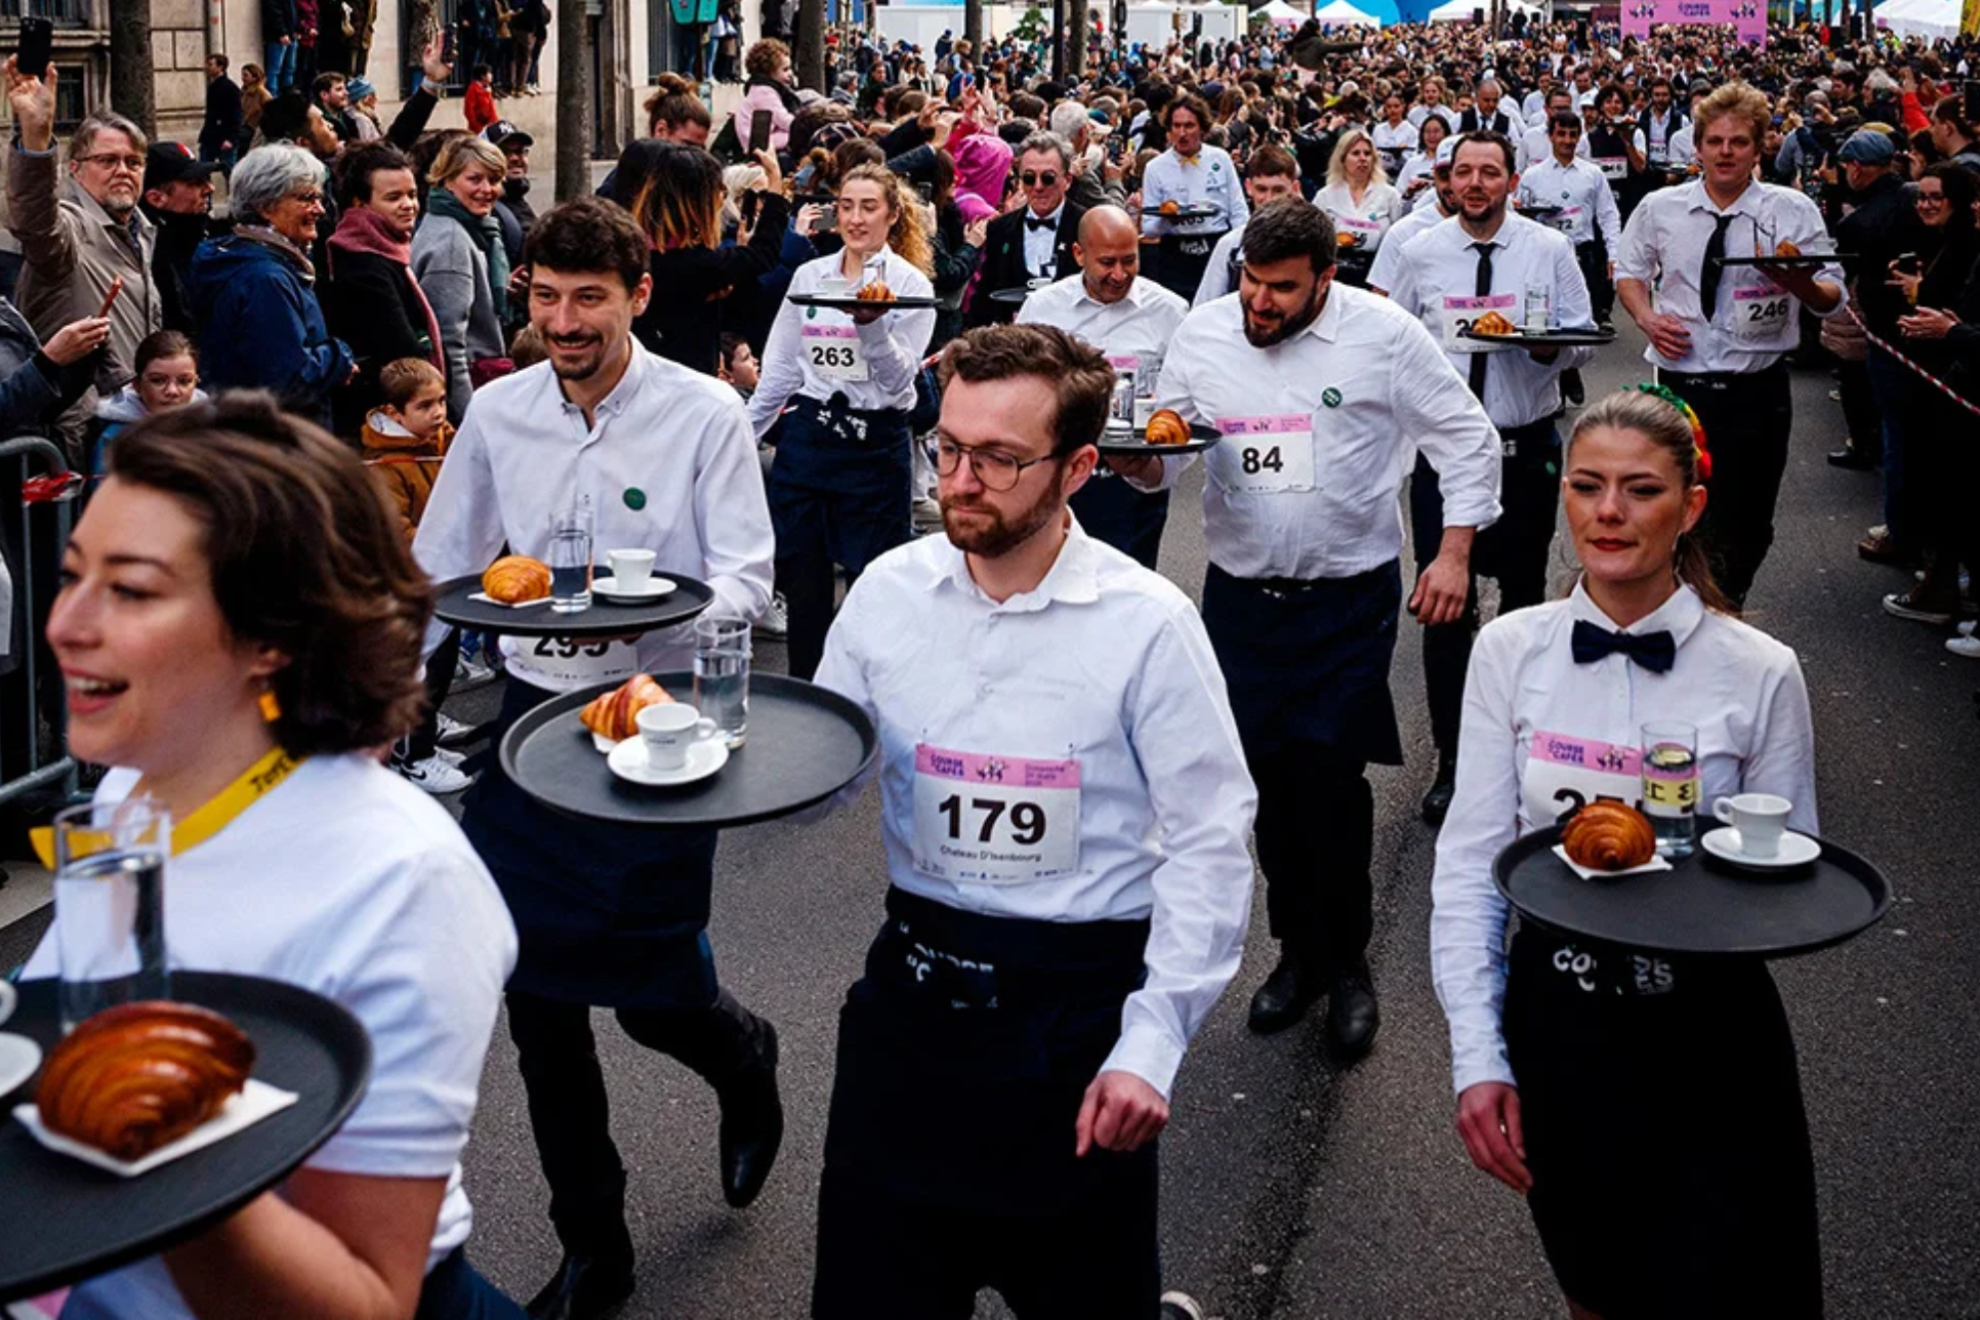 Pars recupera su tradicional carrera del caf: camareros corriendo con bandejas!